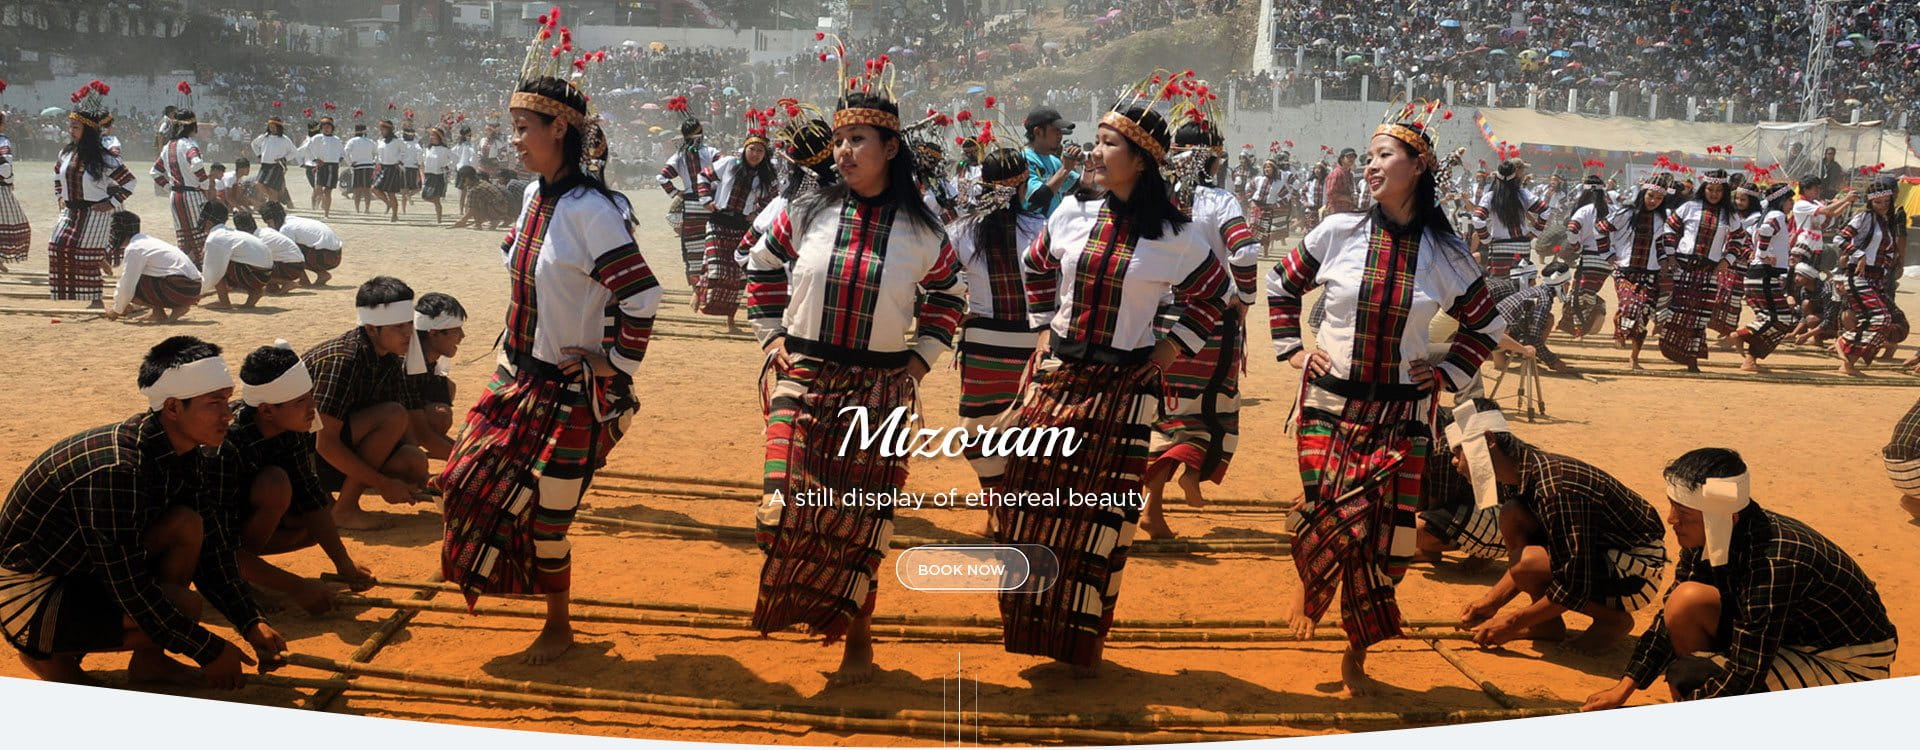 Mizoram Tour & Travel Agency - Eastern Meadows Tour